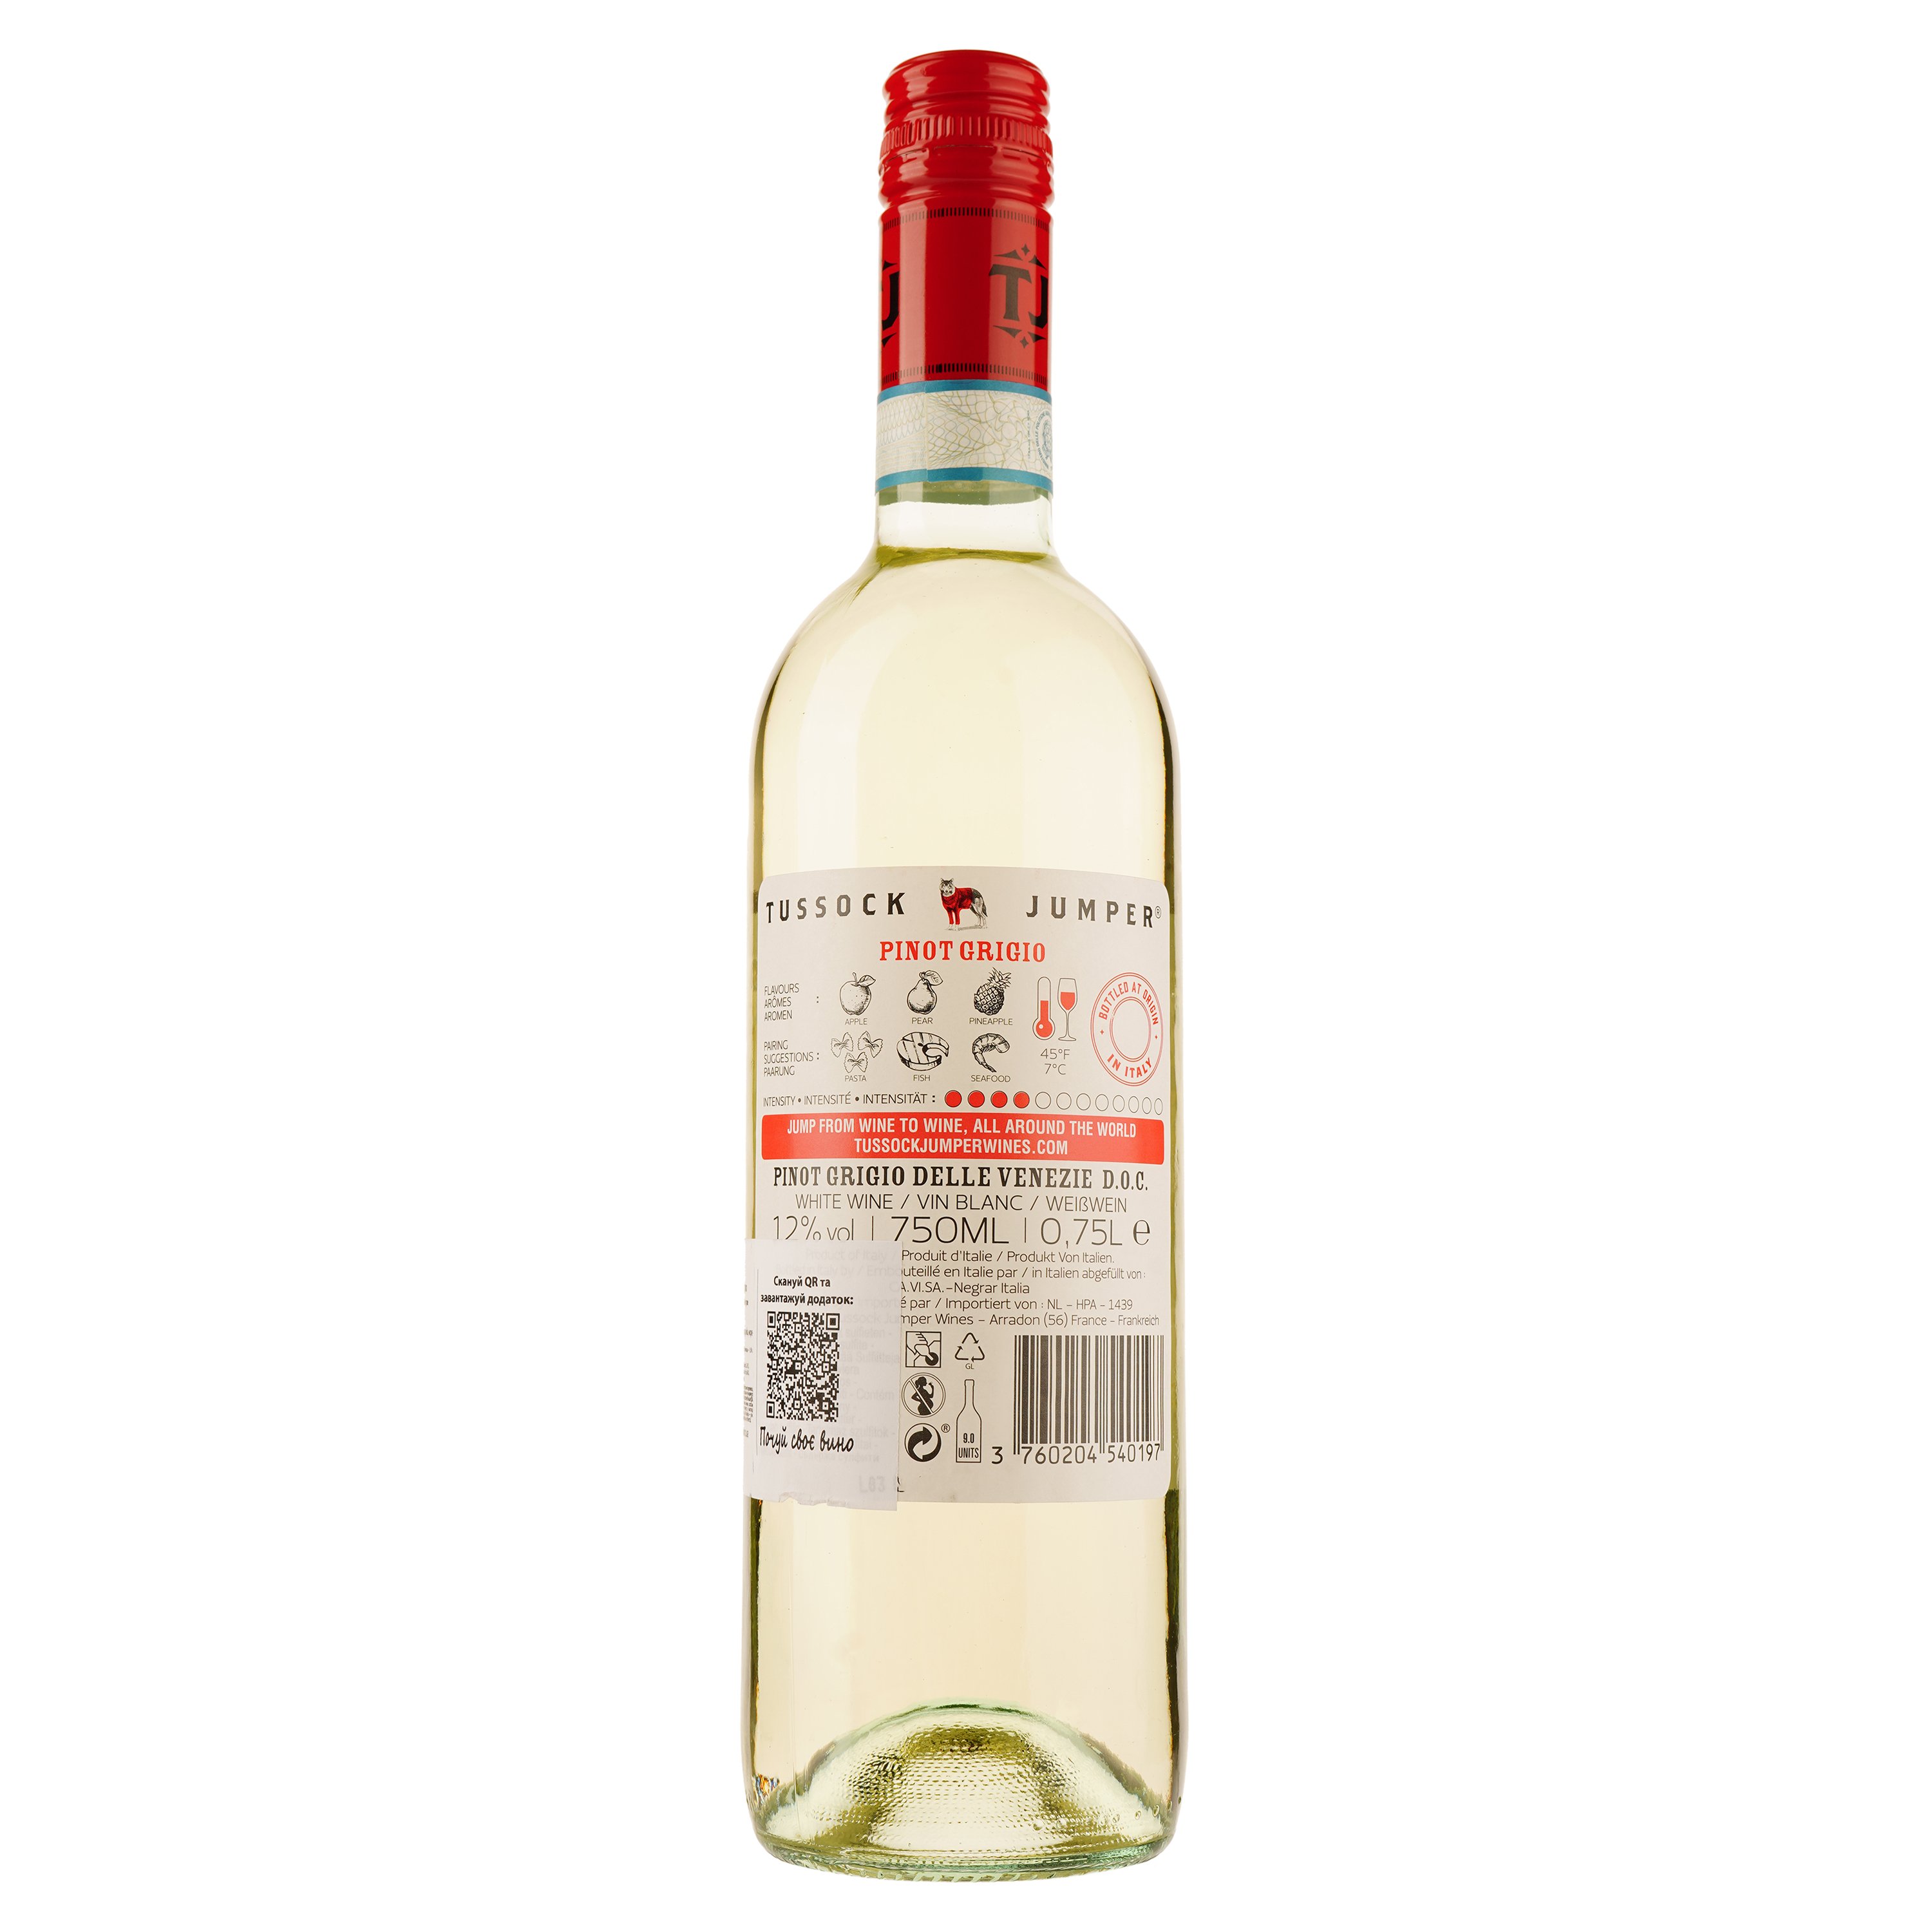 Вино Tussock Jumper Pinot Grigio Dellle Venezie, белое, сухое, 0,75 л - фото 2